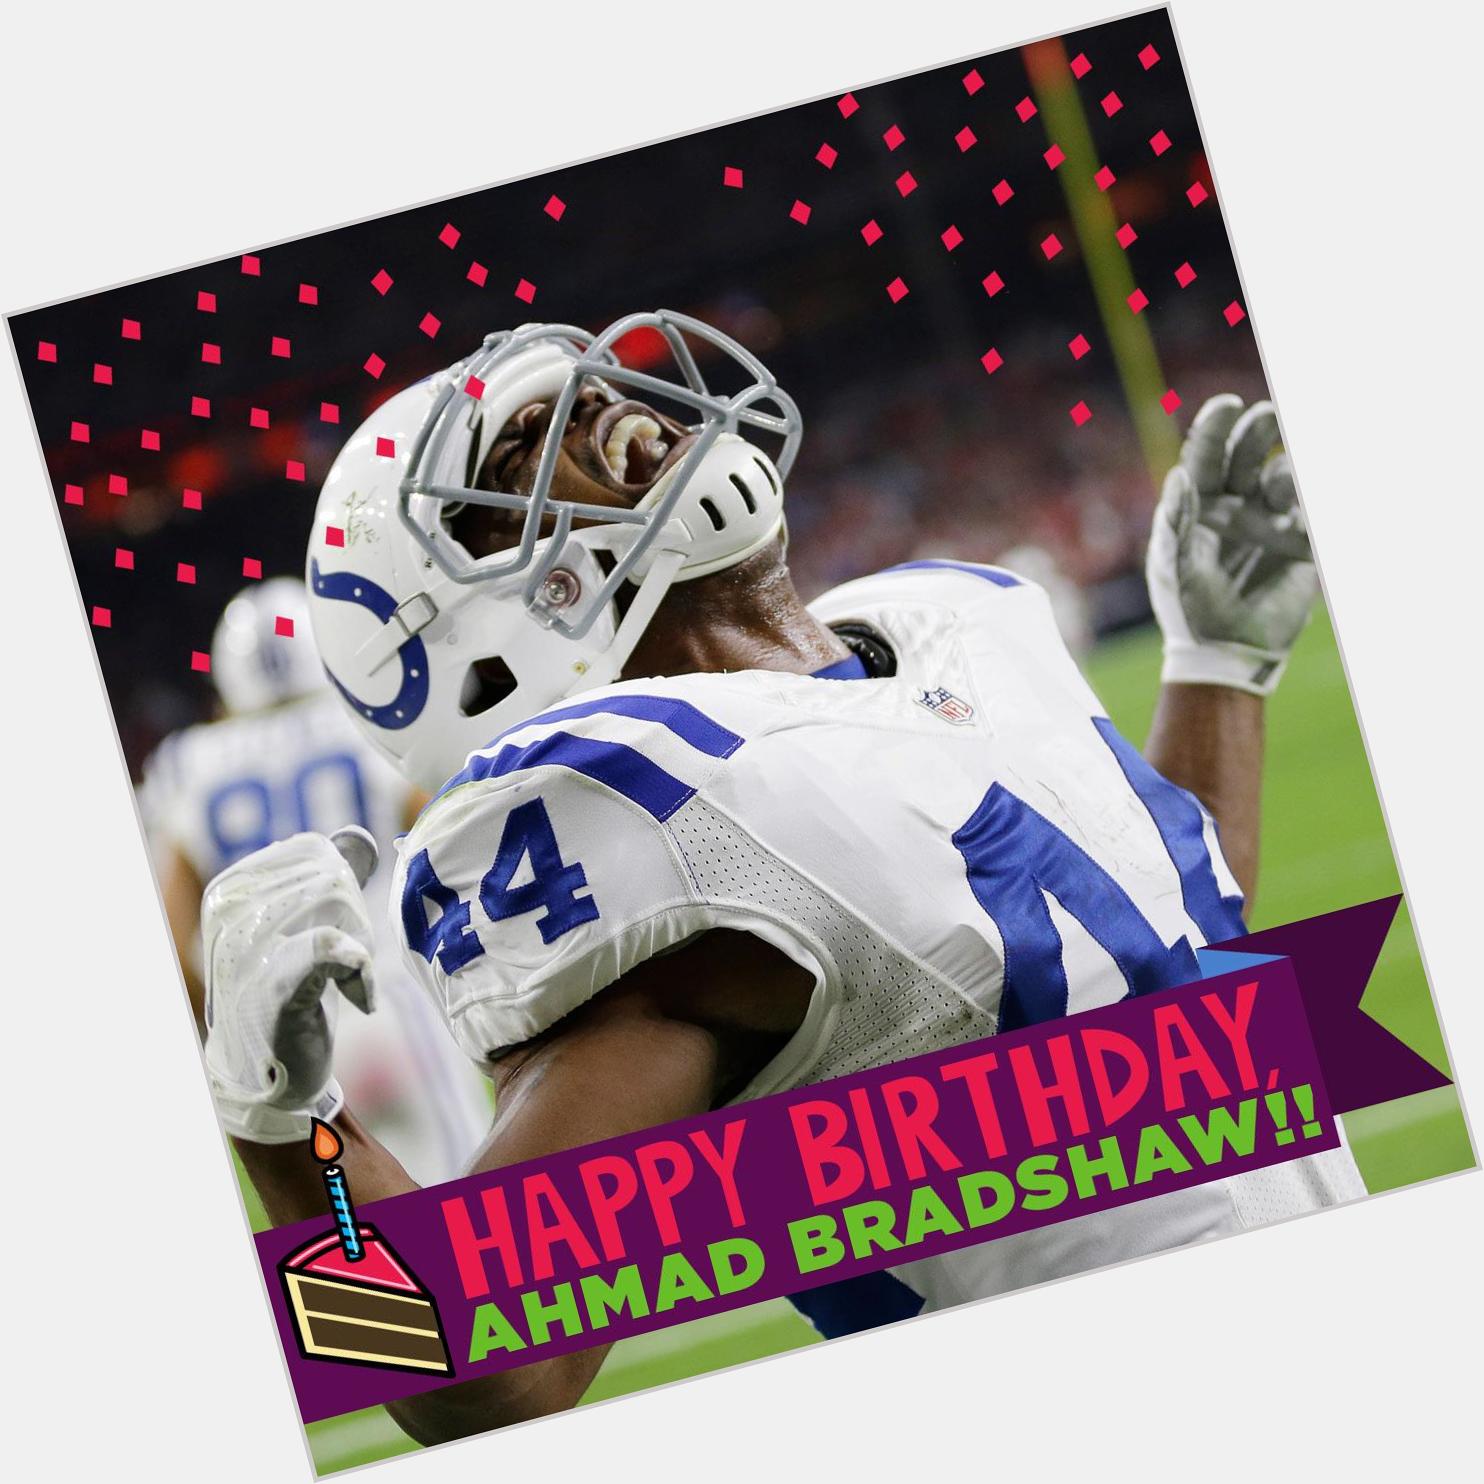 To wish a Happy Birthday to RB Ahmad Bradshaw! 